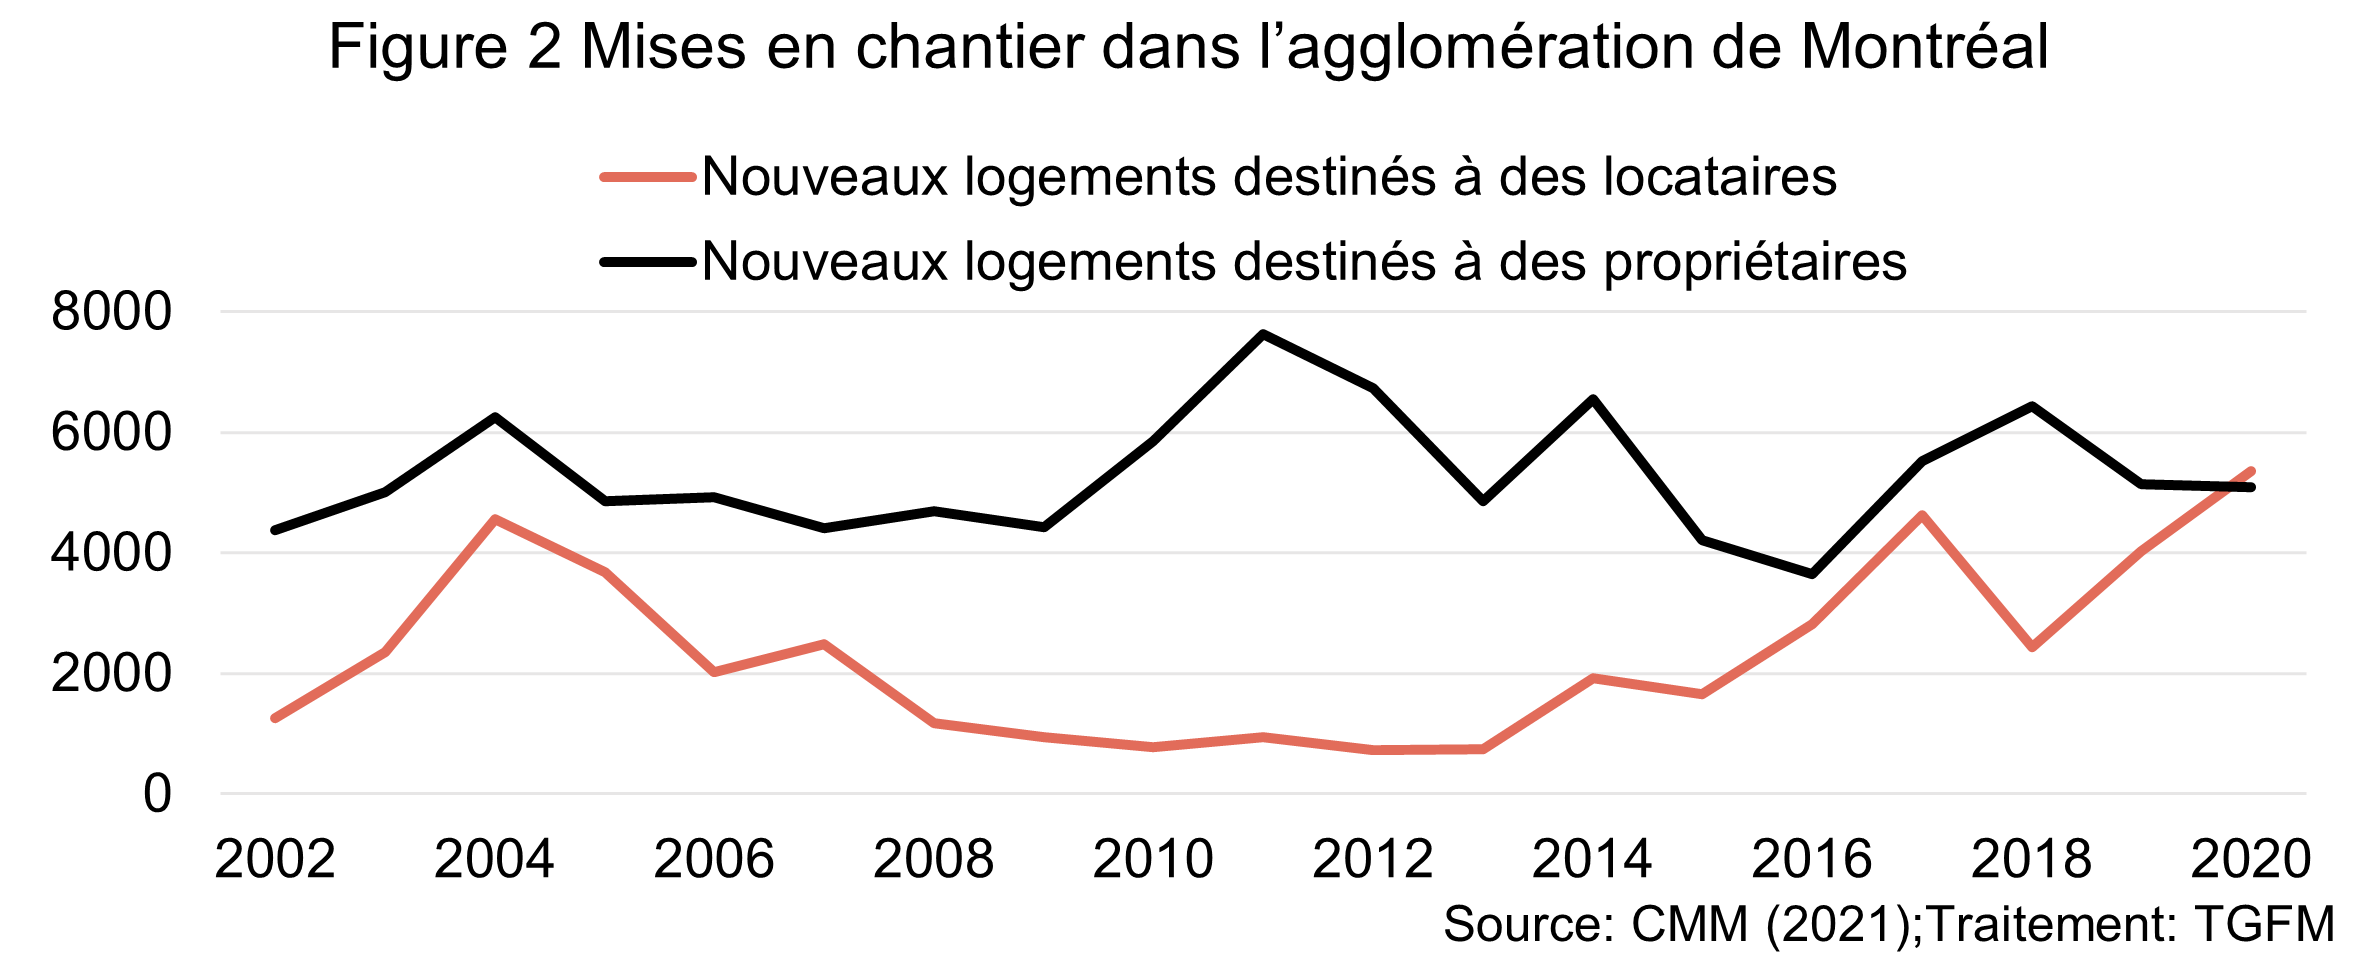 Graphique représentant l'évolution des mises en chantier à Montréal de 2002 à 2020. En 2002, les nouveaux logements sont majorité logements destinés à des propriétaires. Cette proportion augmente autour des années 2010. En 2020, la majorité des nouveaux logements sont destinés aux locataires. 